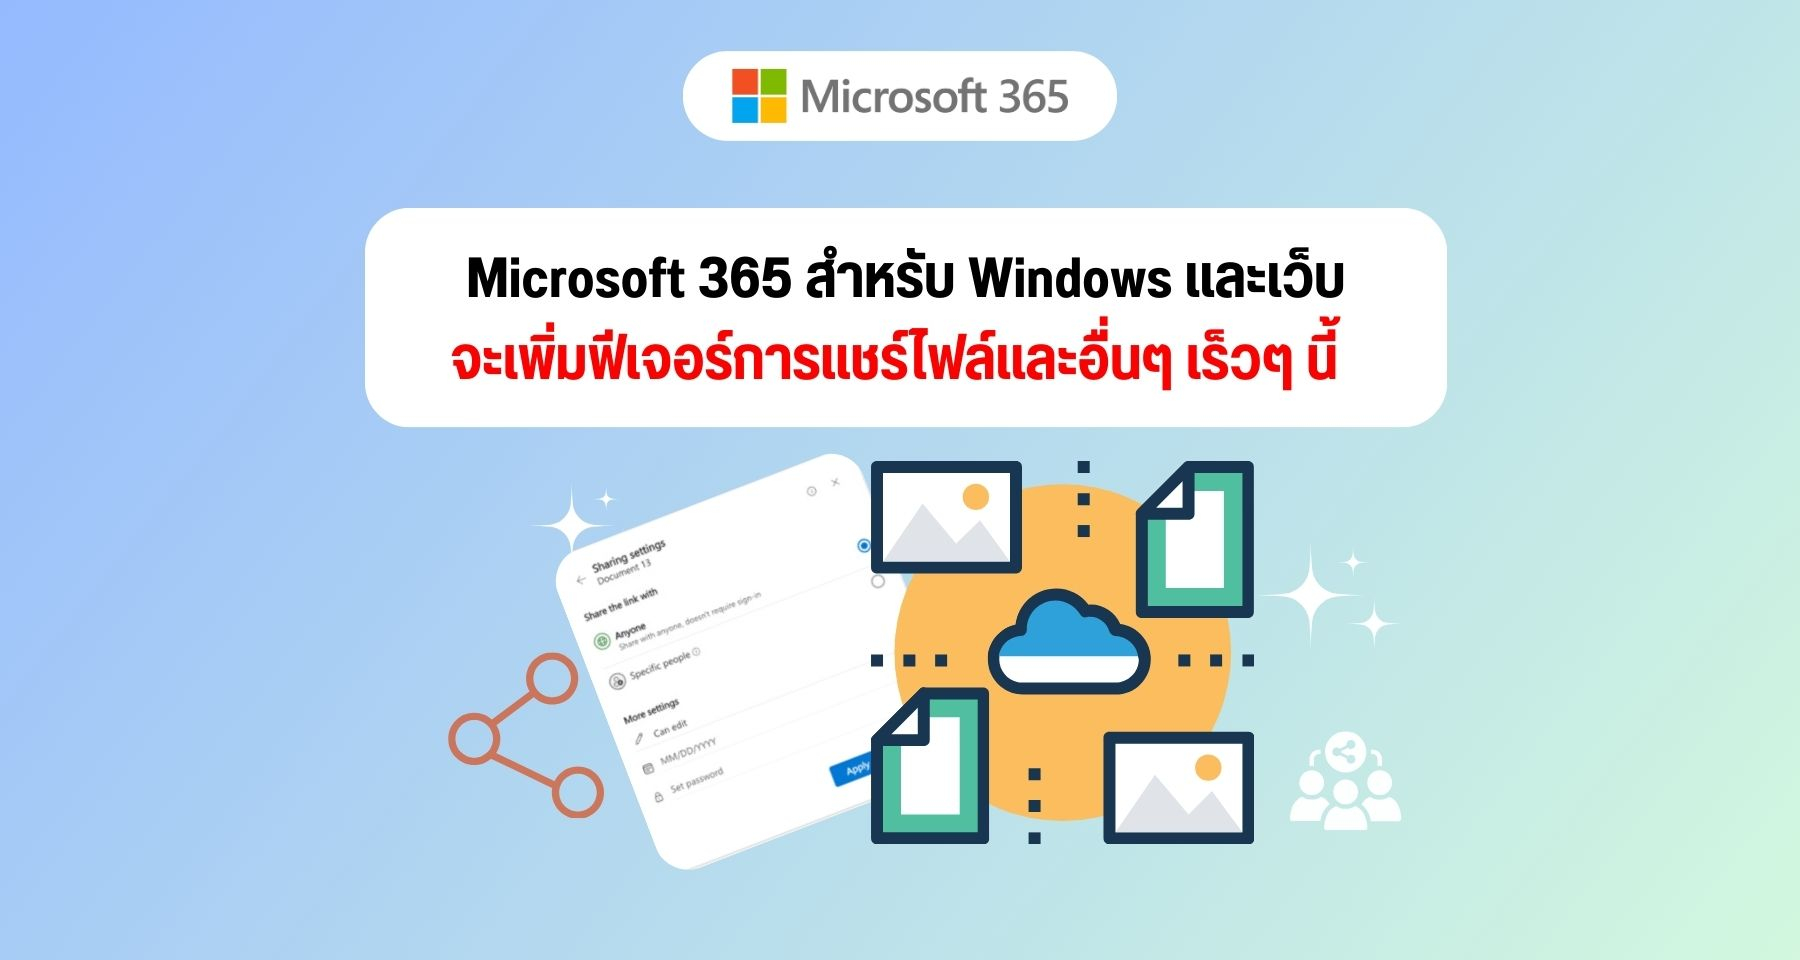 Microsoft 365 สำหรับ Windows และเว็บจะเพิ่มฟีเจอร์การแชร์ไฟล์และอื่นๆ เร็วๆ นี้